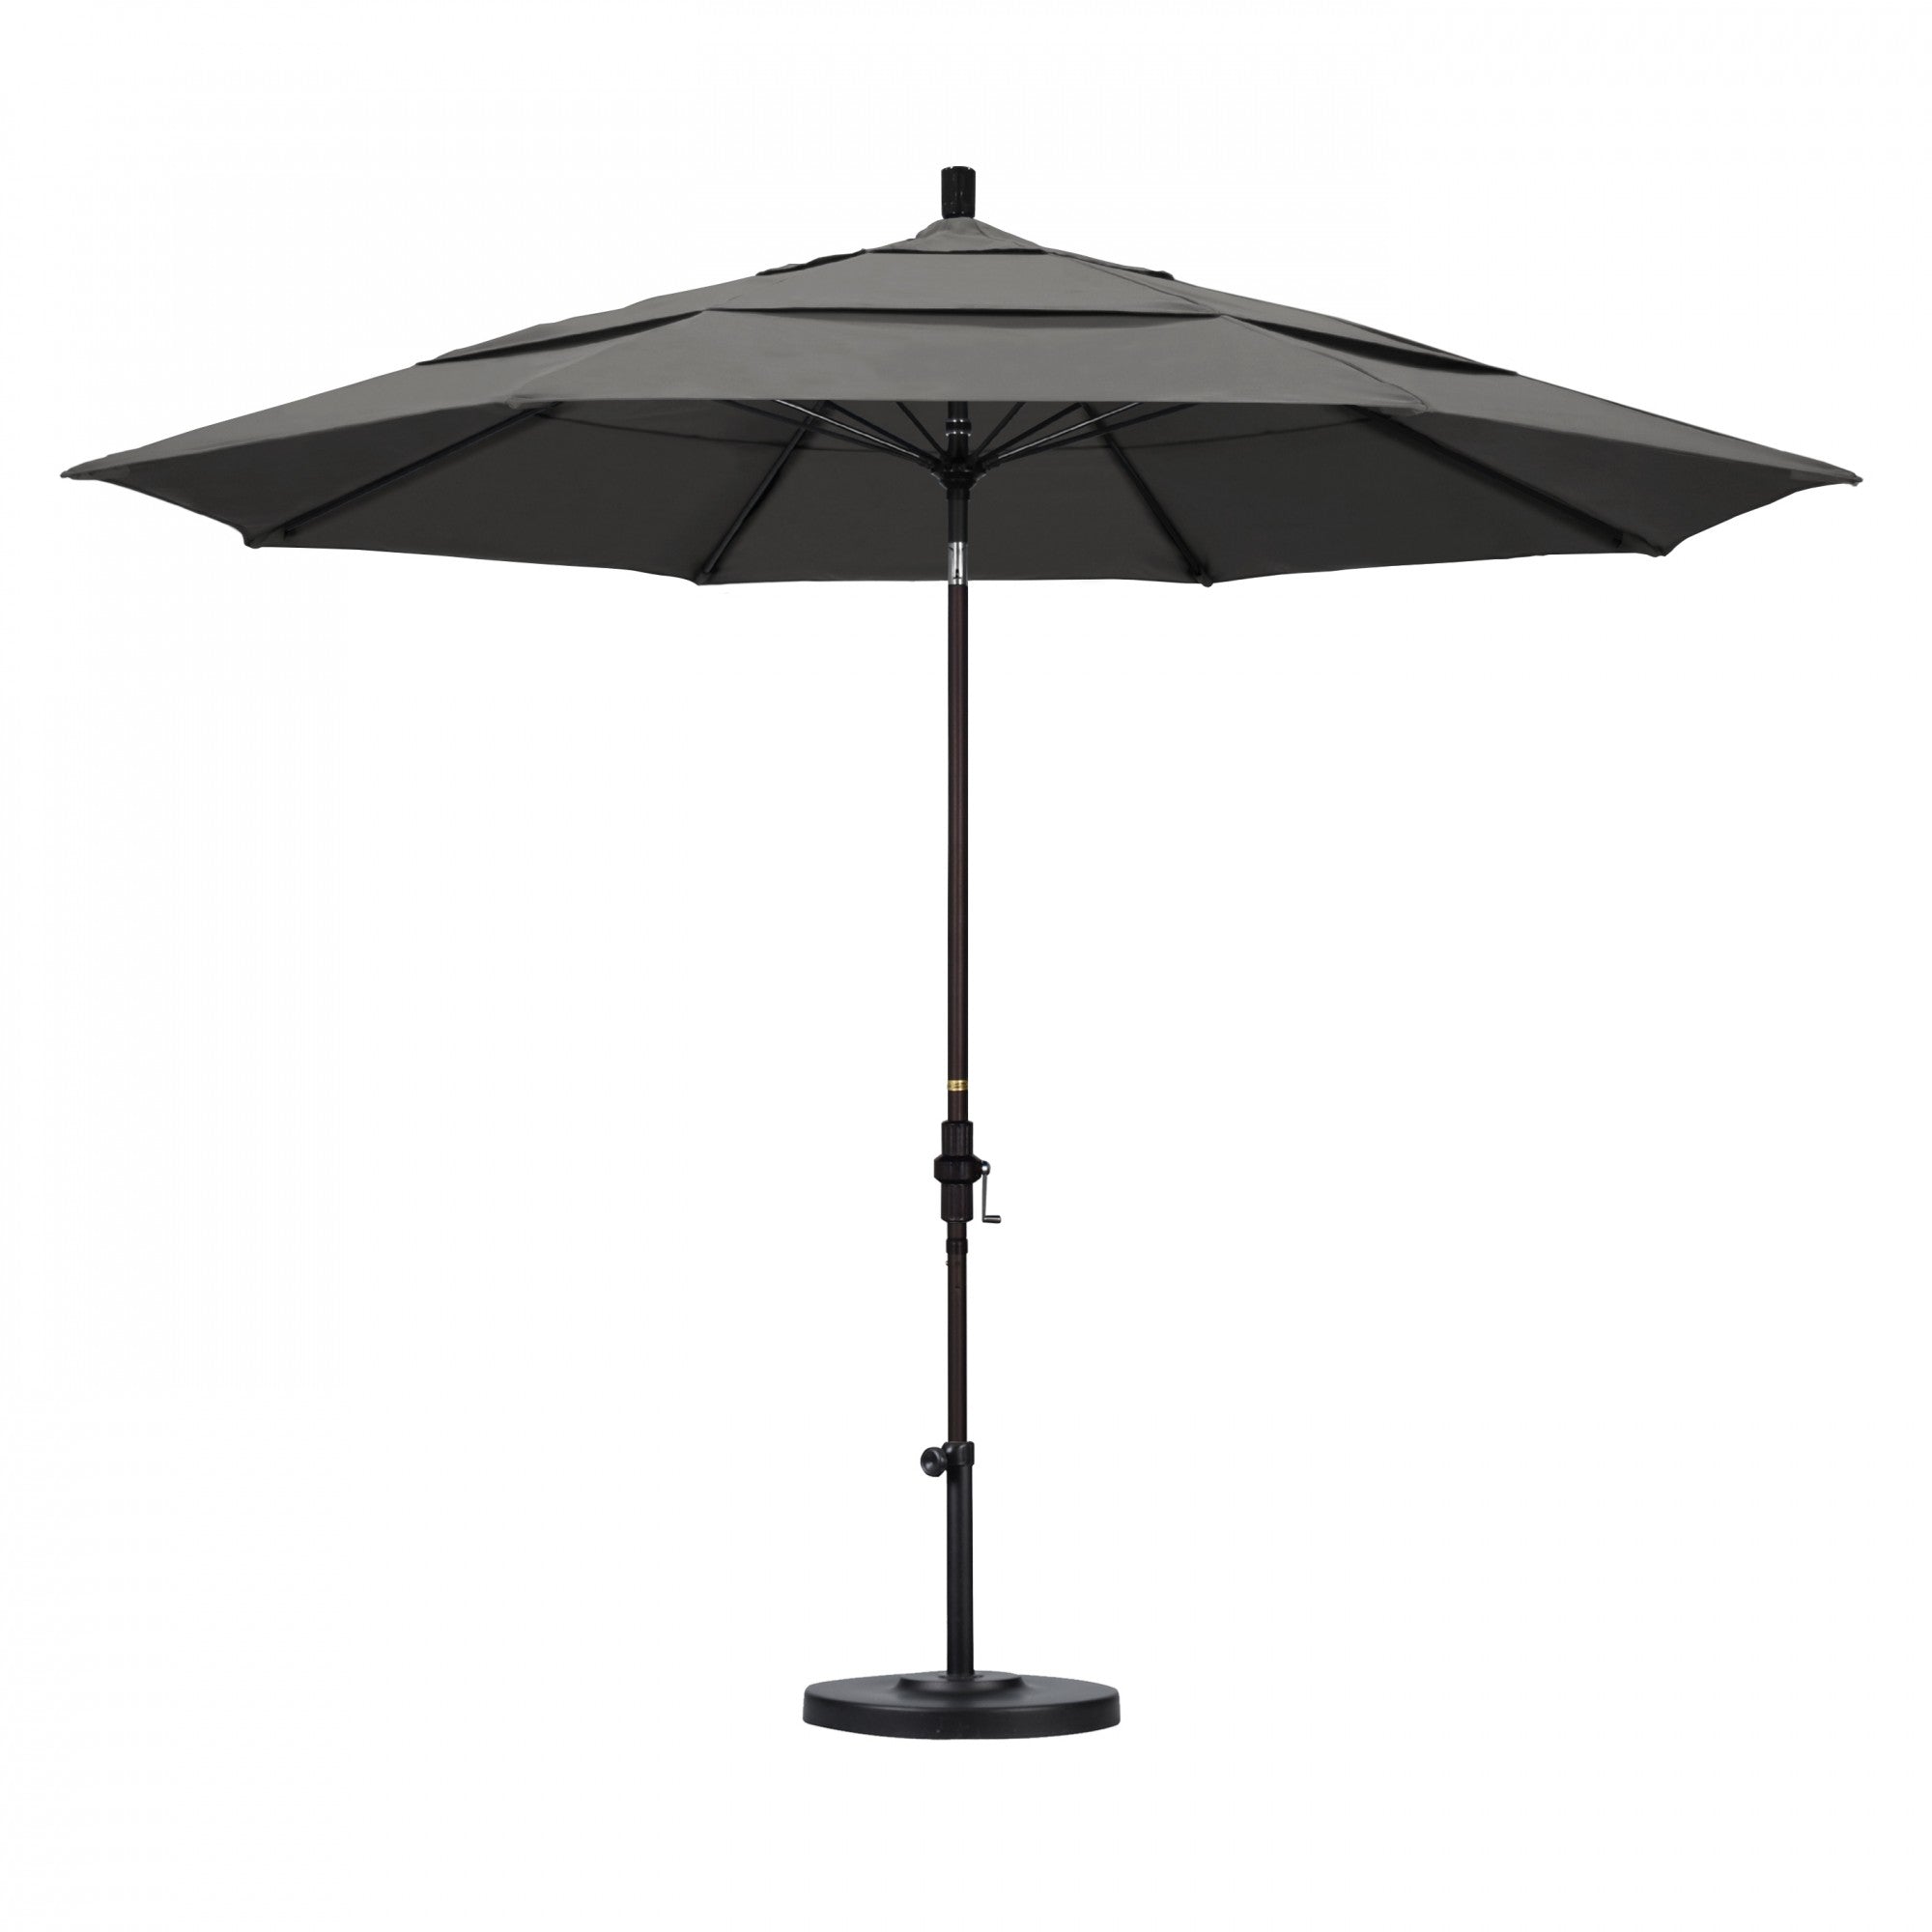 California Umbrella - 11' - Patio Umbrella Umbrella - Aluminum Pole - Charcoal - Sunbrella  - GSCUF118117-54048-DWV